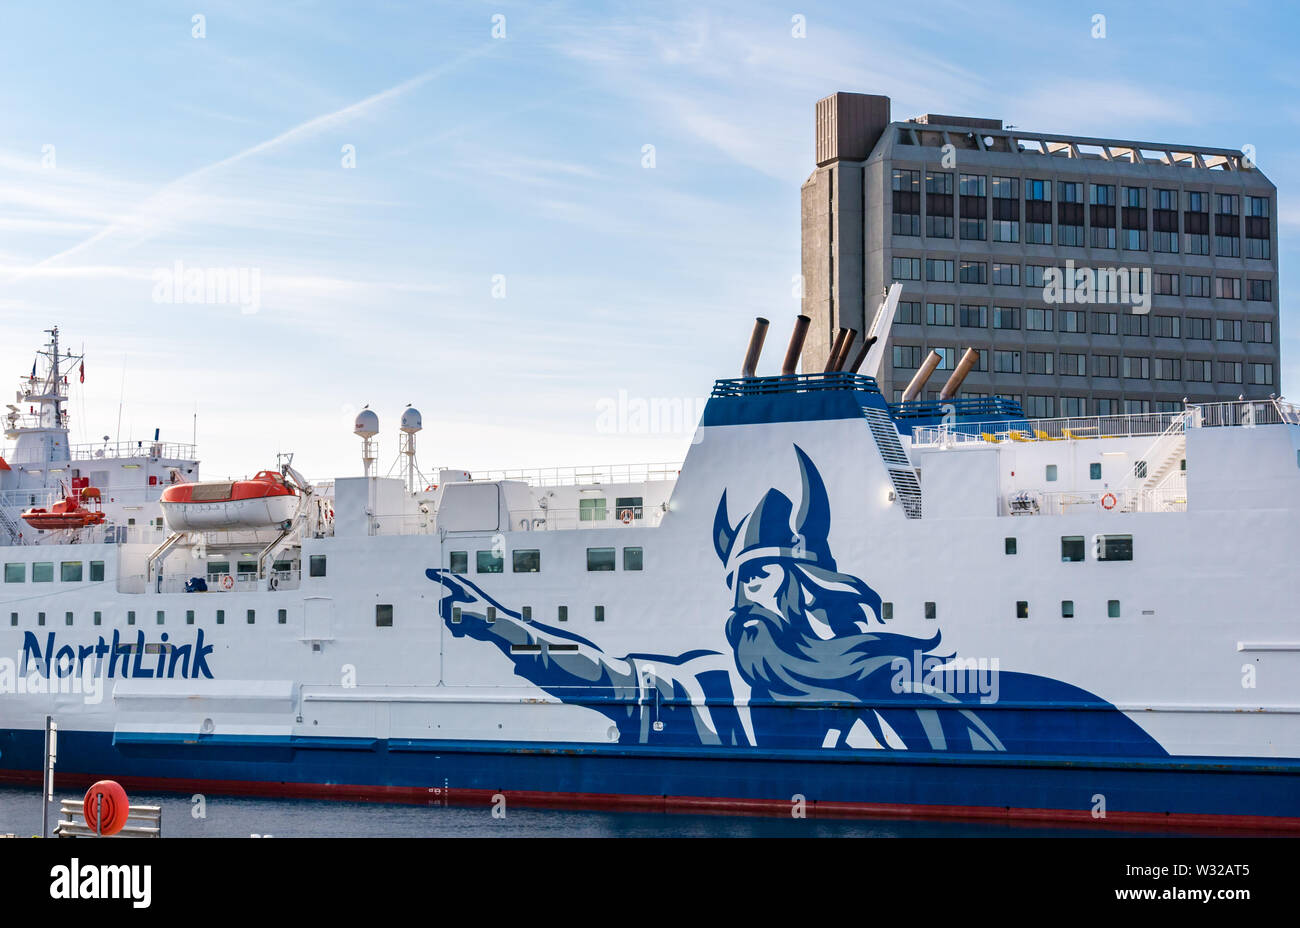 Ferry Northlink amarré dans le port d'Aberdeen avec logo Viking, Aberdeen, Écosse, Royaume-Uni Banque D'Images